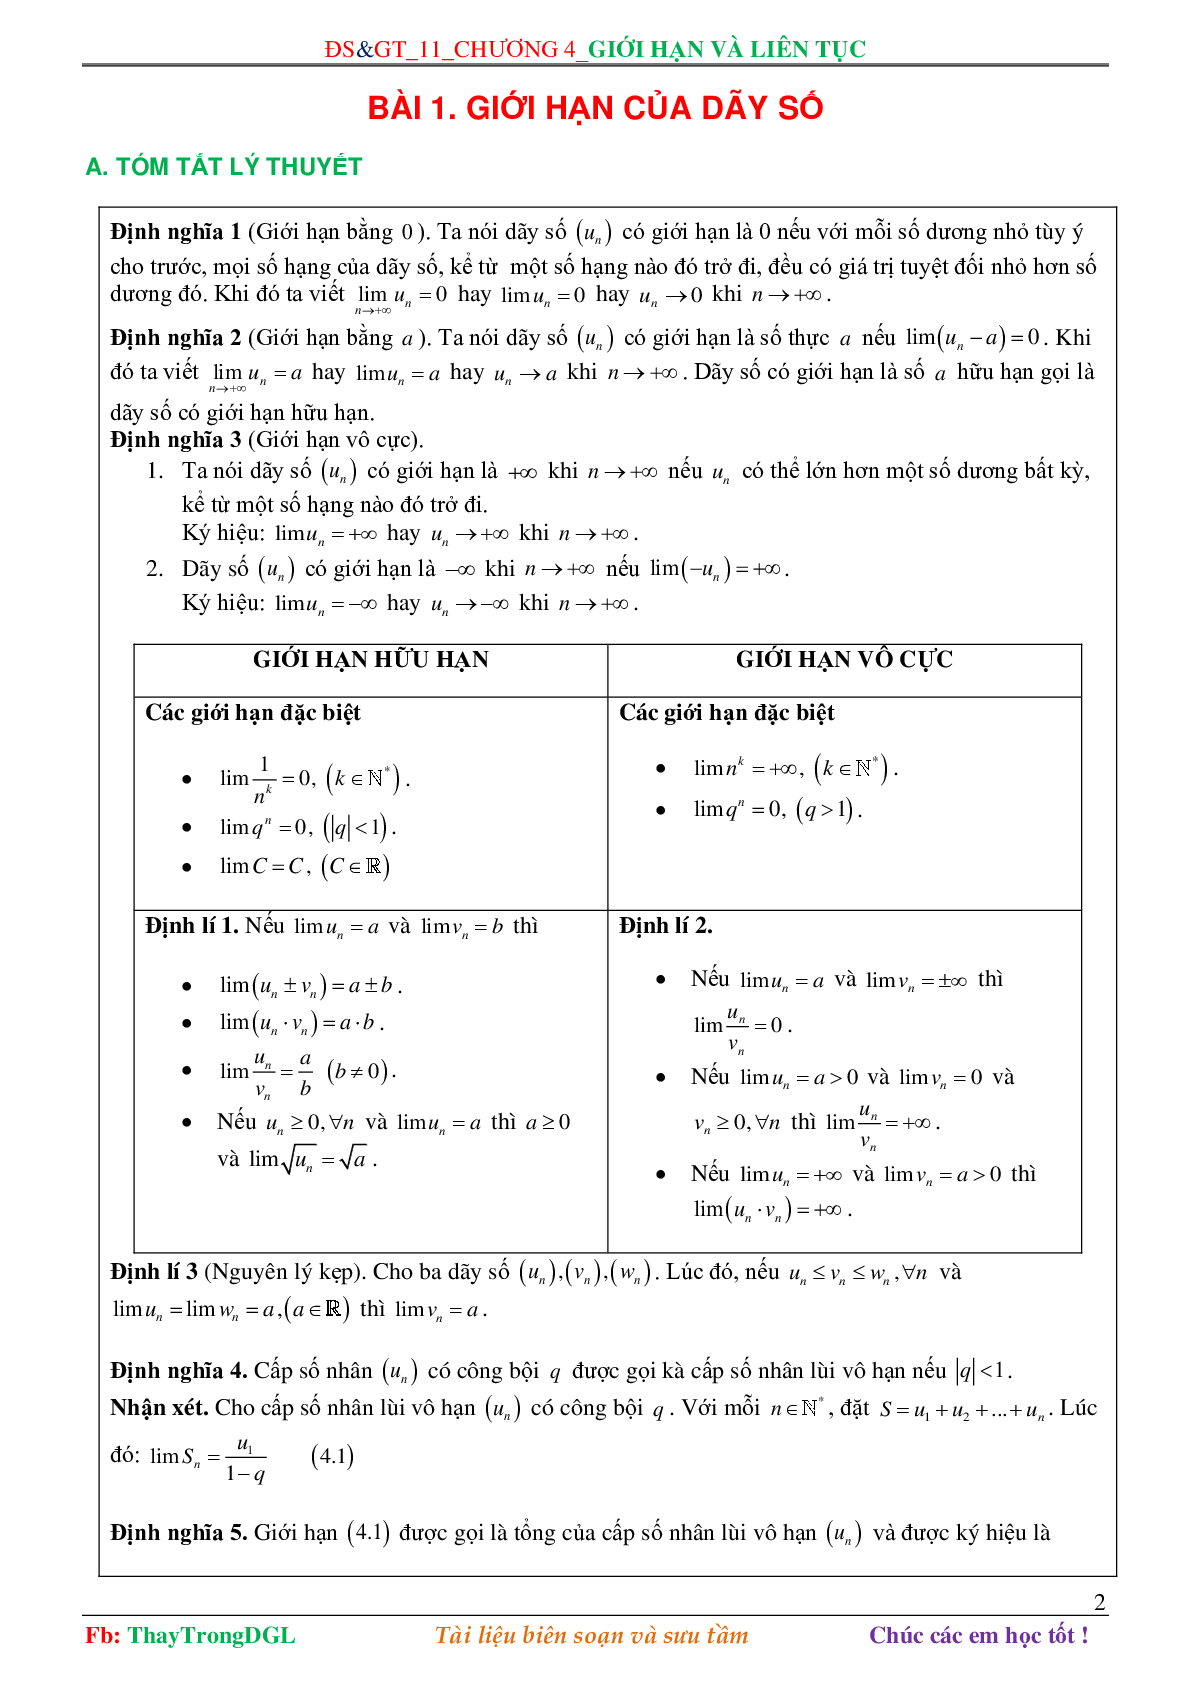 Các dạng toán về Giới hạn và liên tục (có bài tập kèm theo) (trang 2)